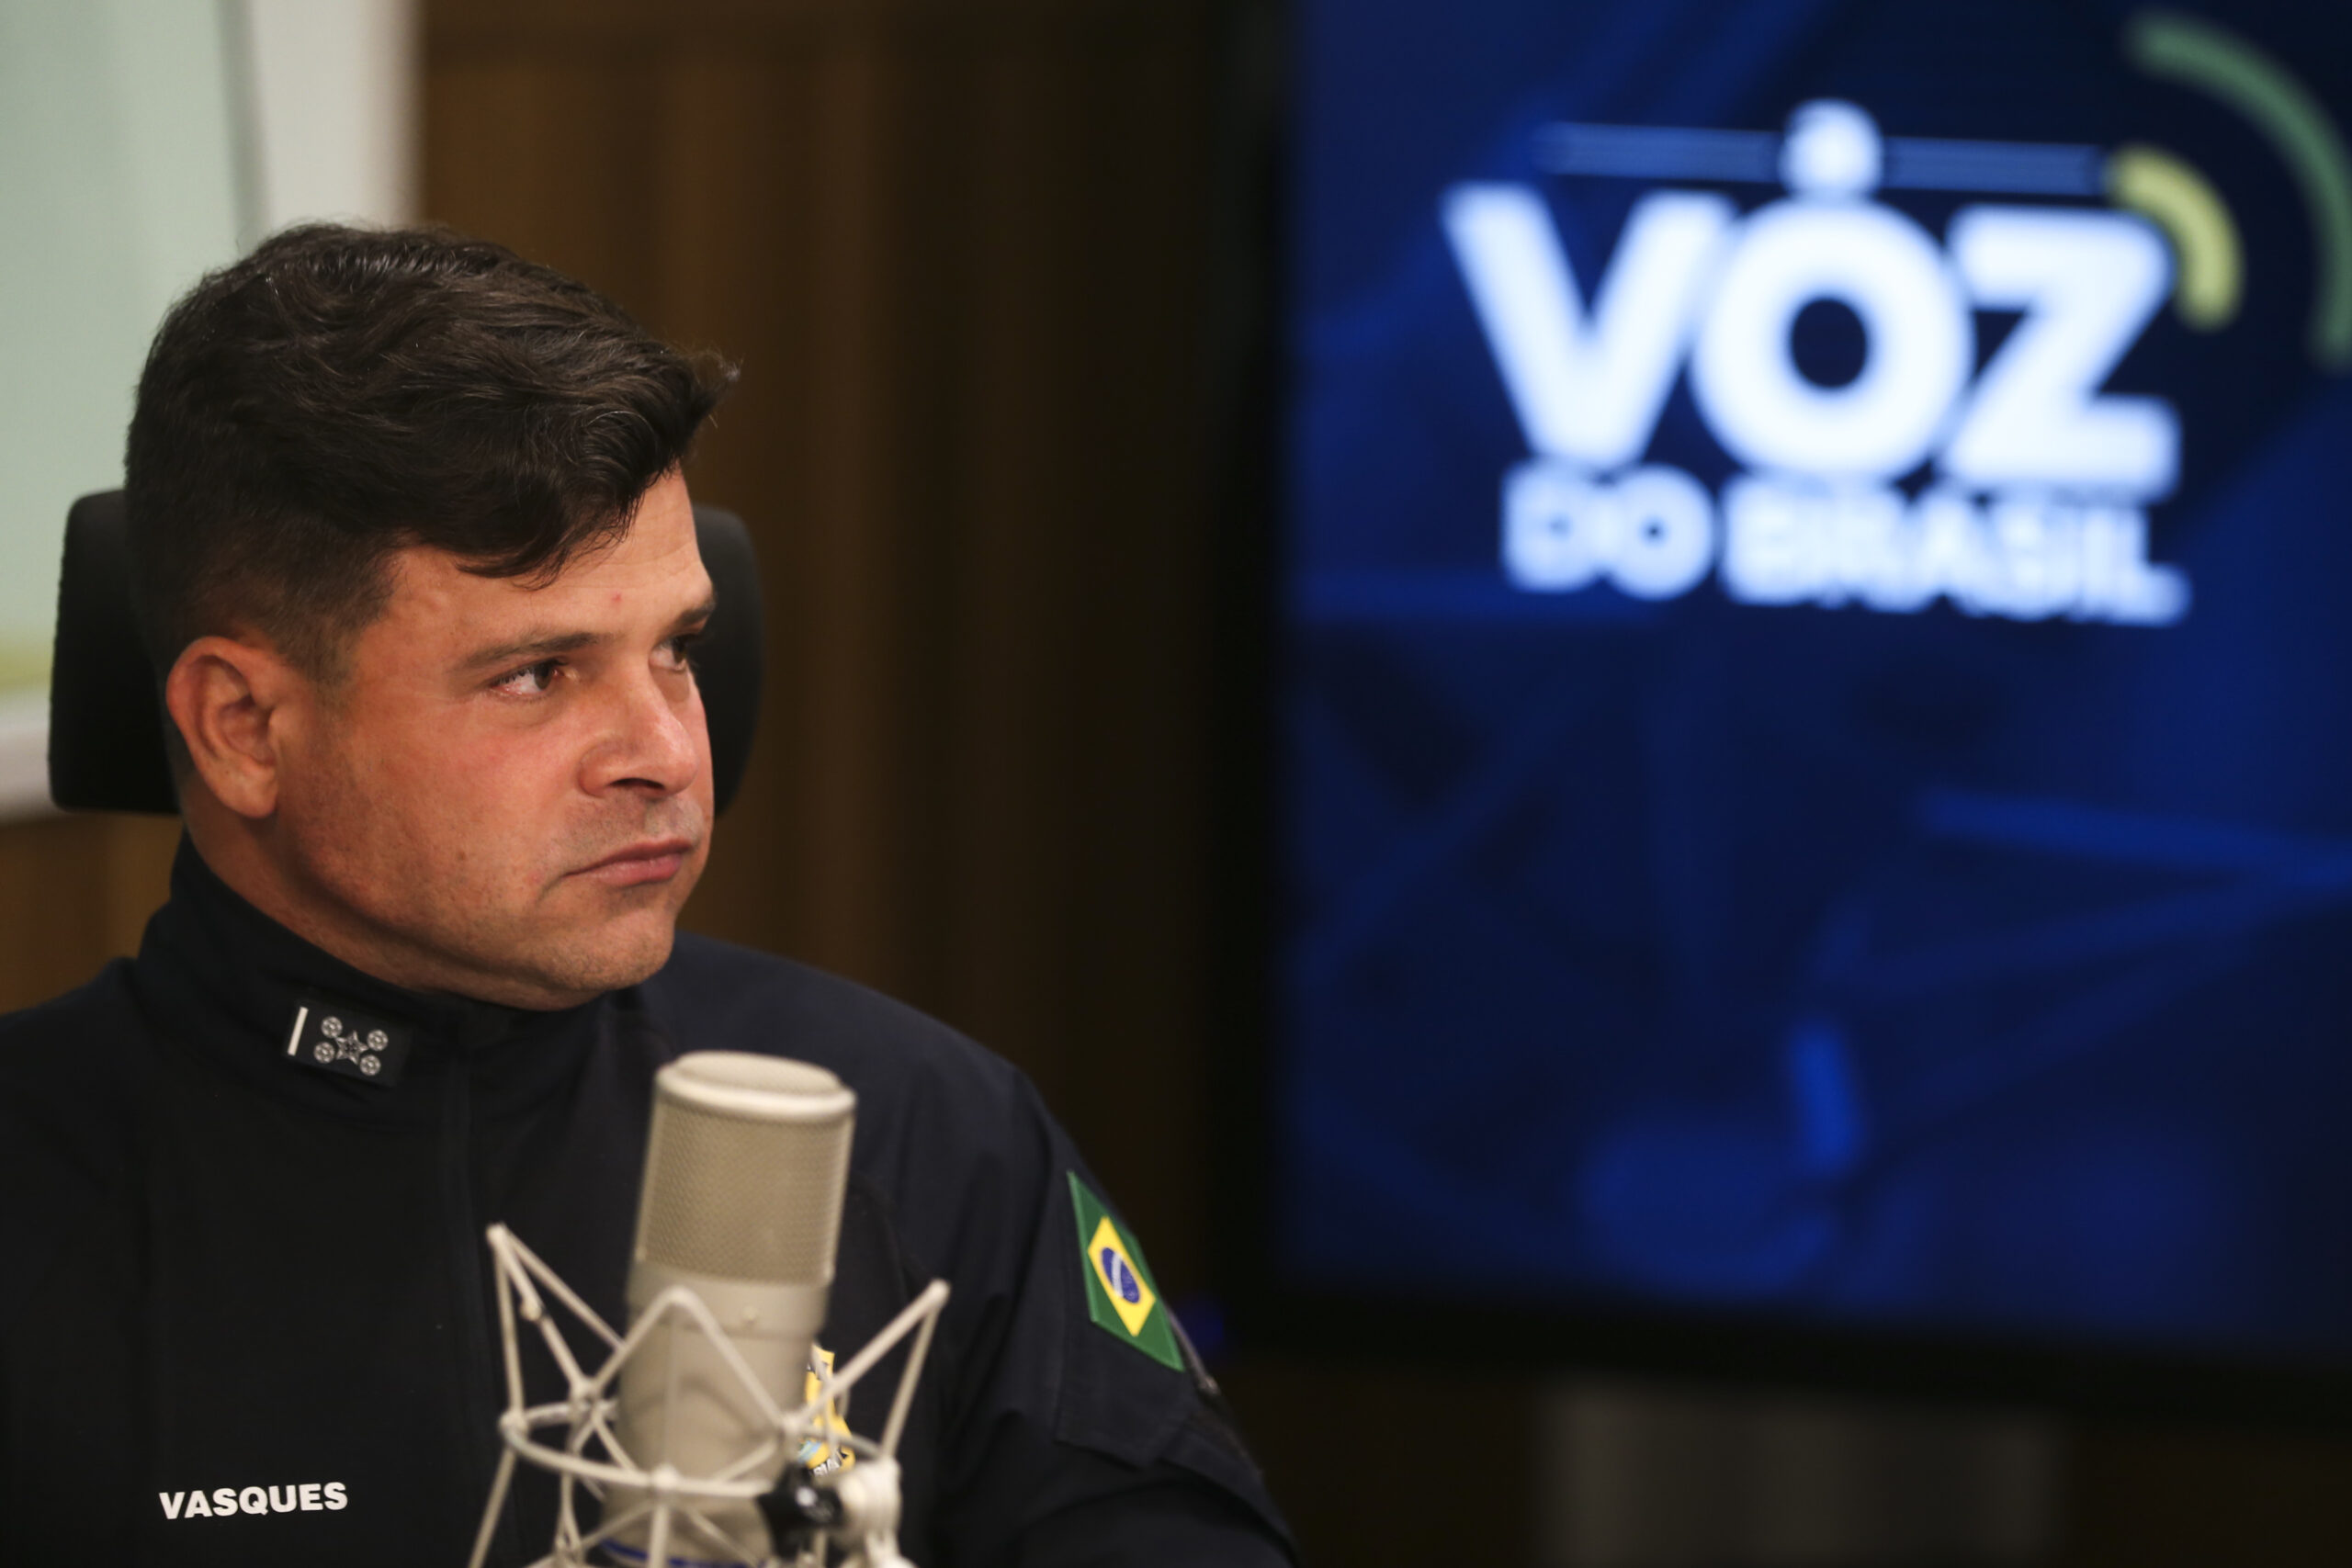 Antes de sair, Bolsonaro envia diretor da PF a Espanha e demite Vasques da PRF